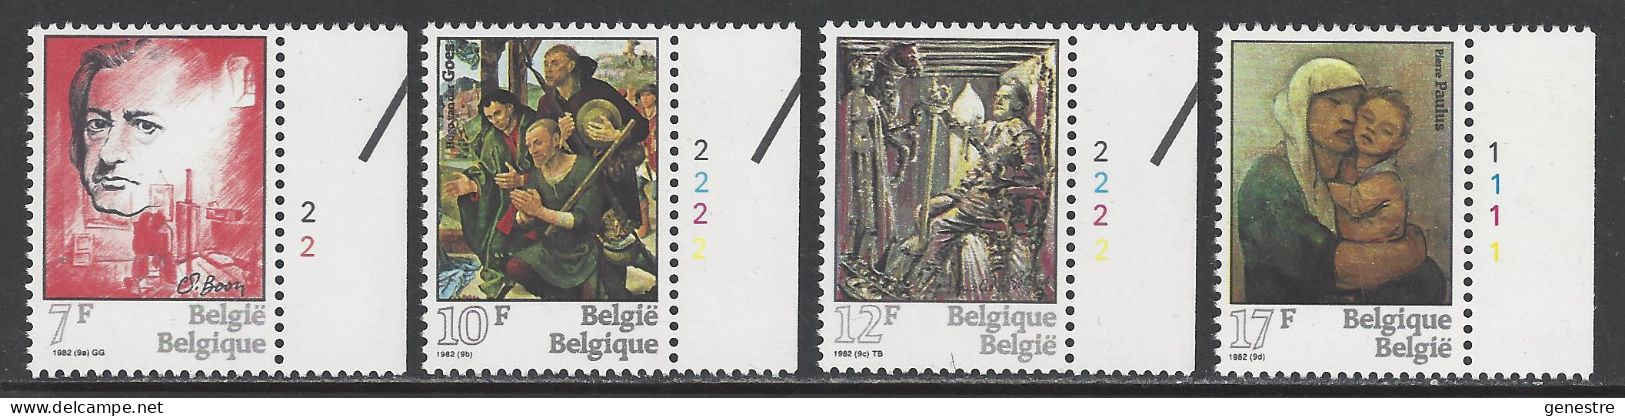 Belgique COB 2060 ** (MNH) - Planche 2 - 1971-1980